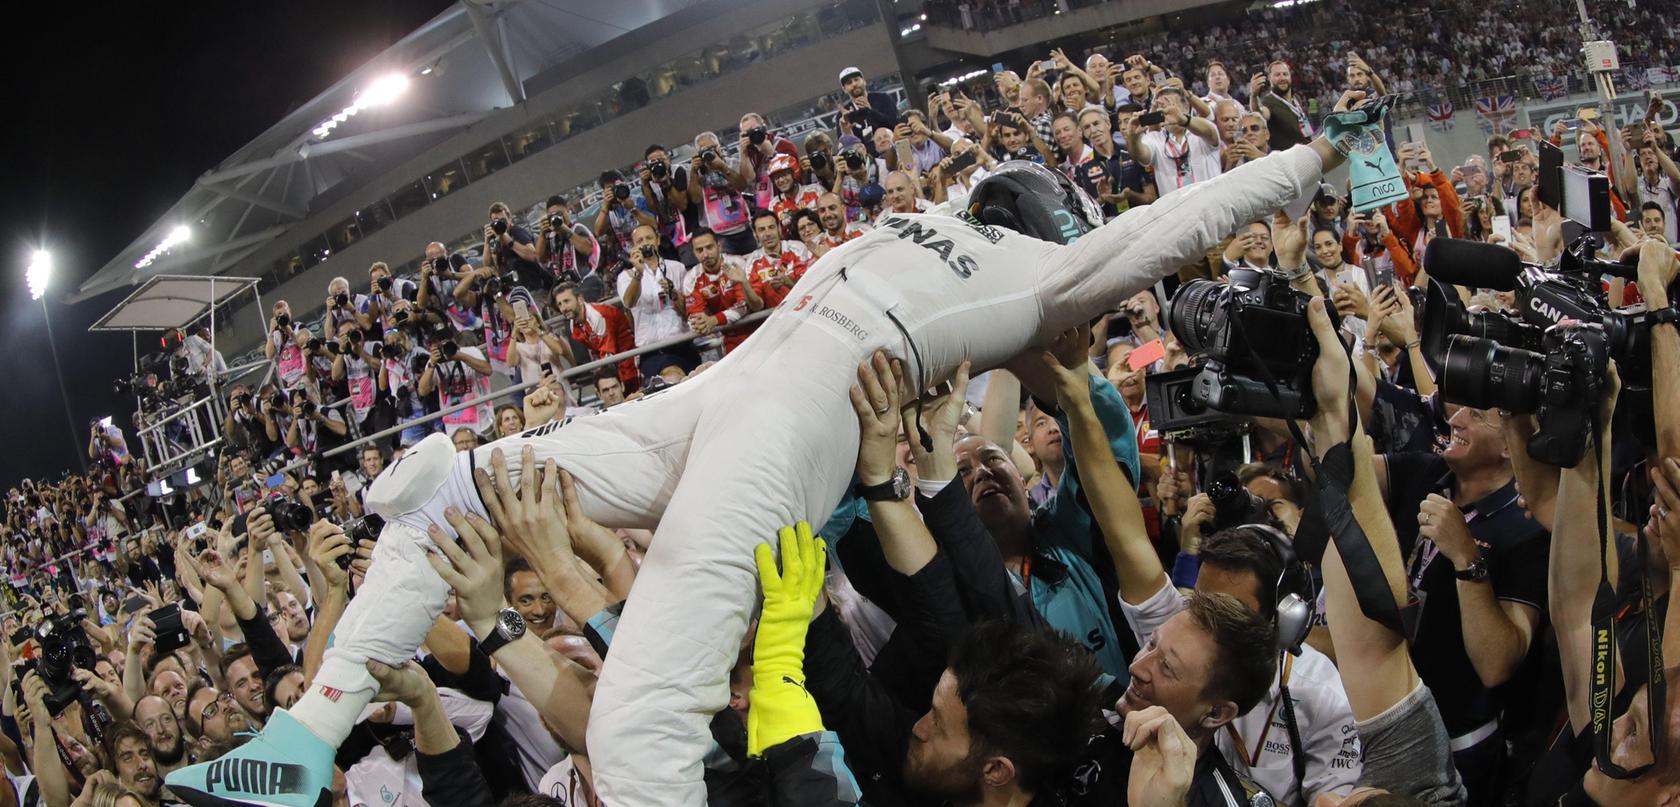 Nico Rosberg wurde auf Händen getragen. Aber der zurückgetretene Formel-1-Weltmeister vermisst den Trubel um seine Person nicht. Damit ist er offensichtlich nicht alleine.